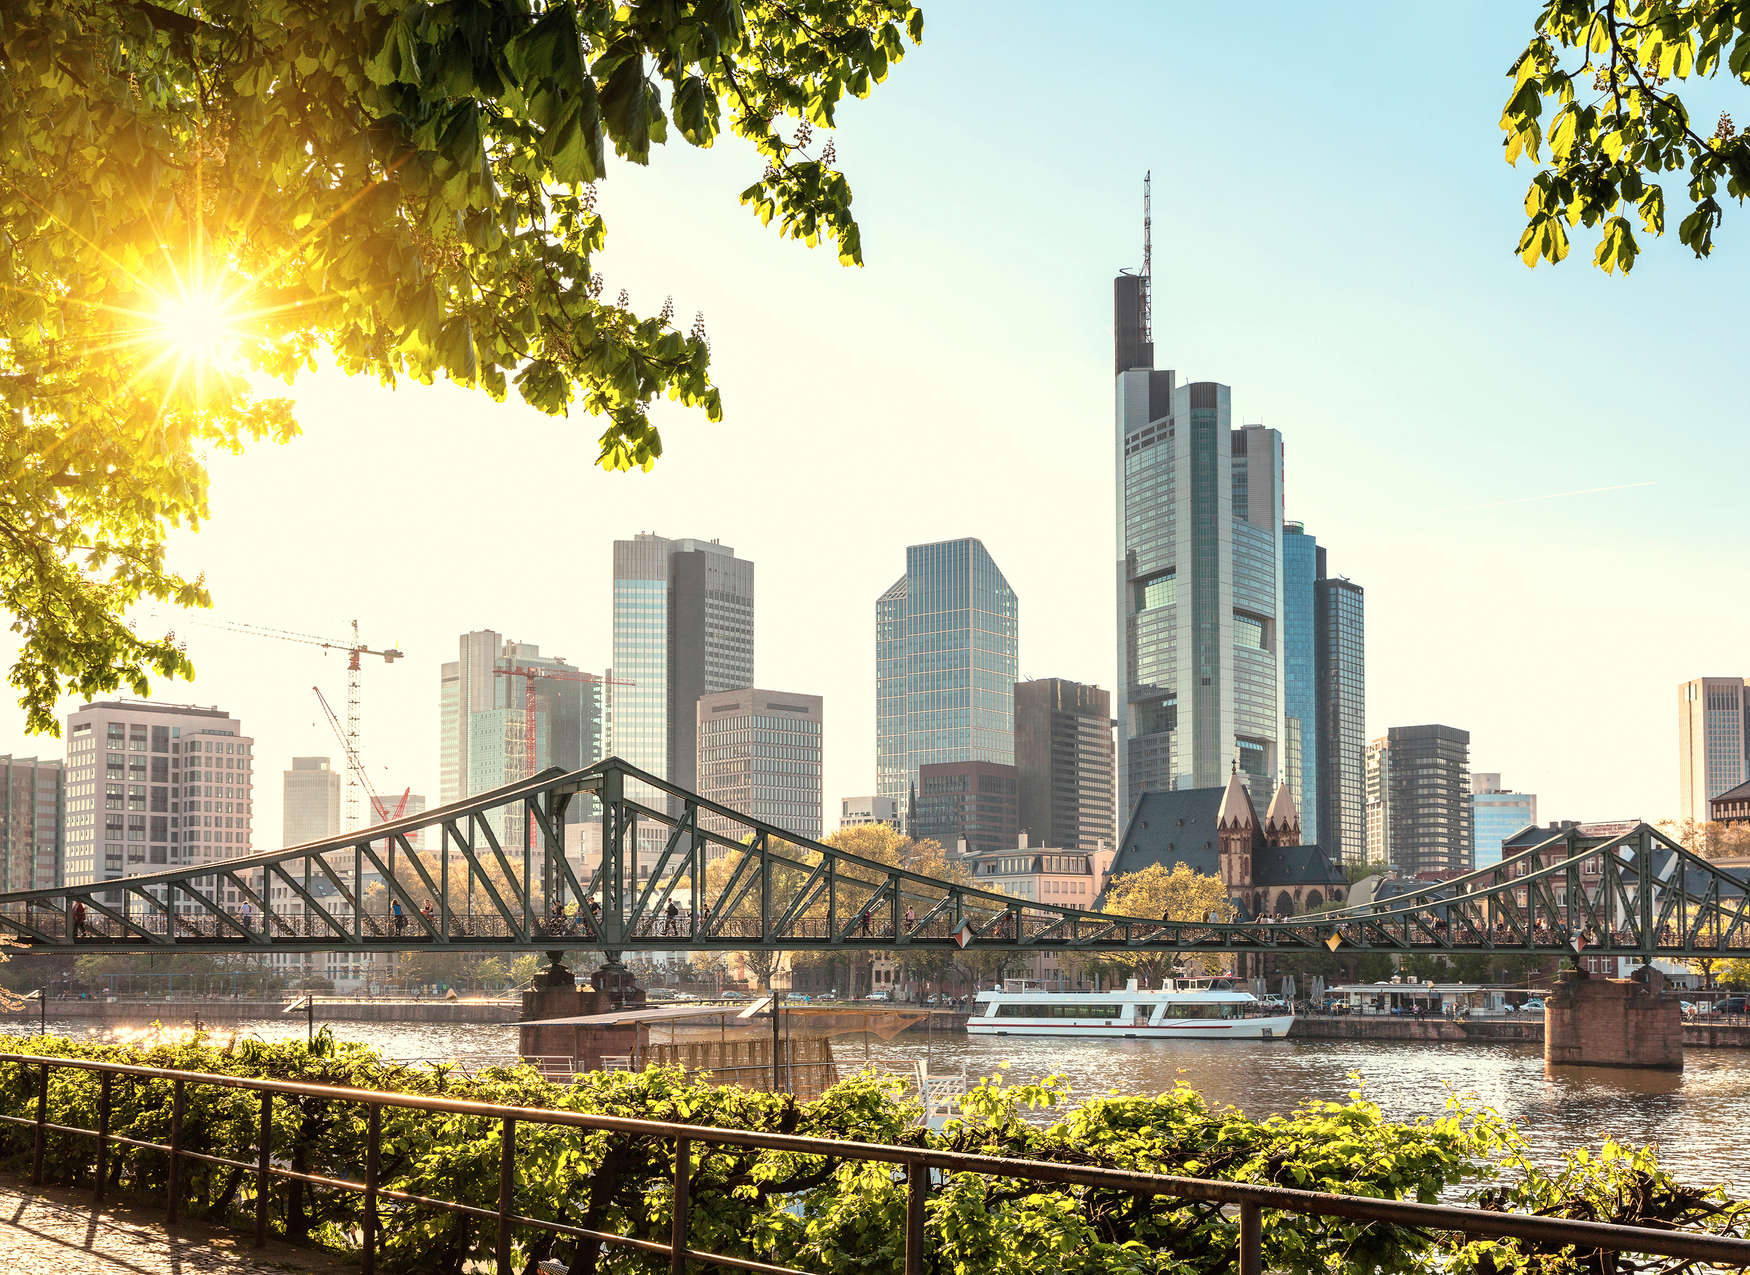             Fototapete Frankfurt Skyline – Blau, Braun, Grau
        